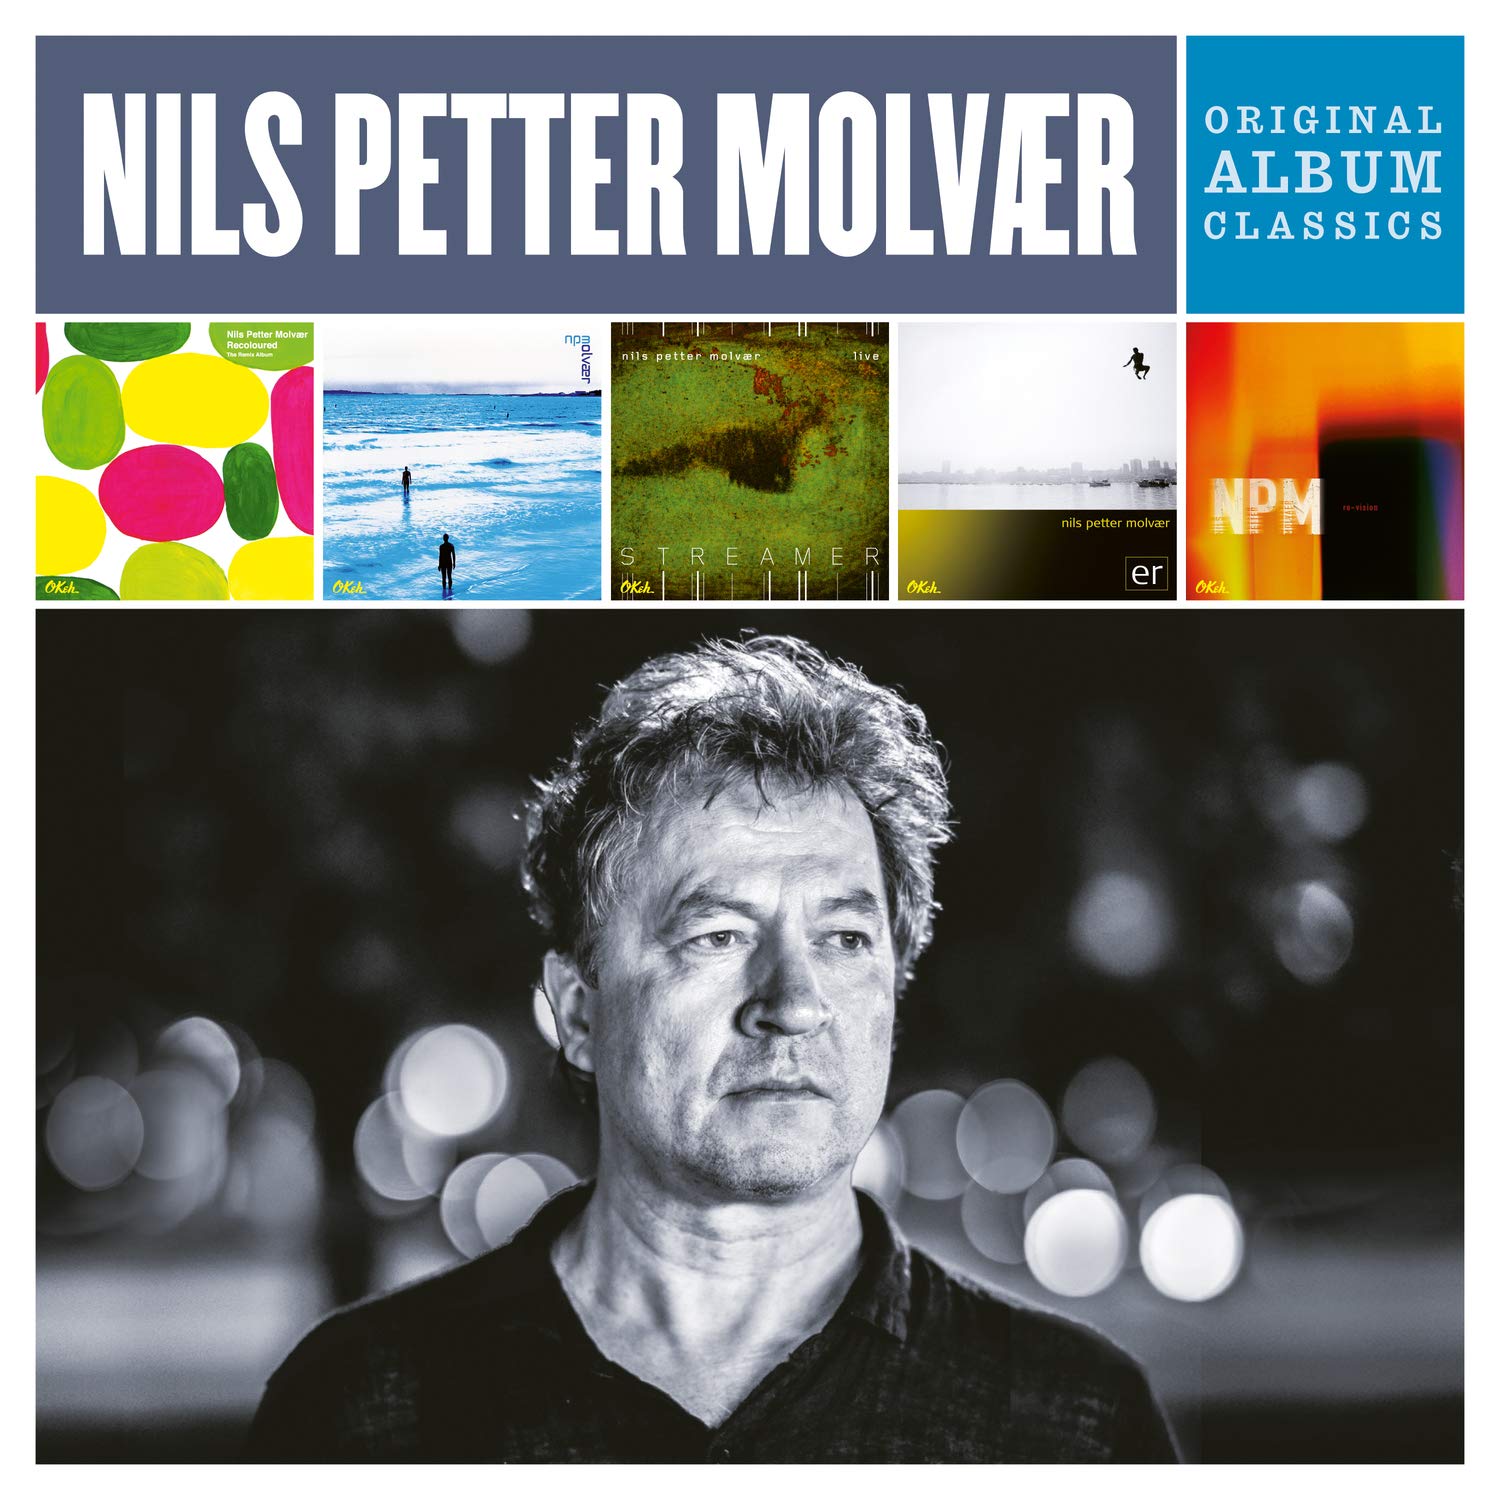 NILS PETTER MOLVAER ORIGINAL ALBUM CLASS